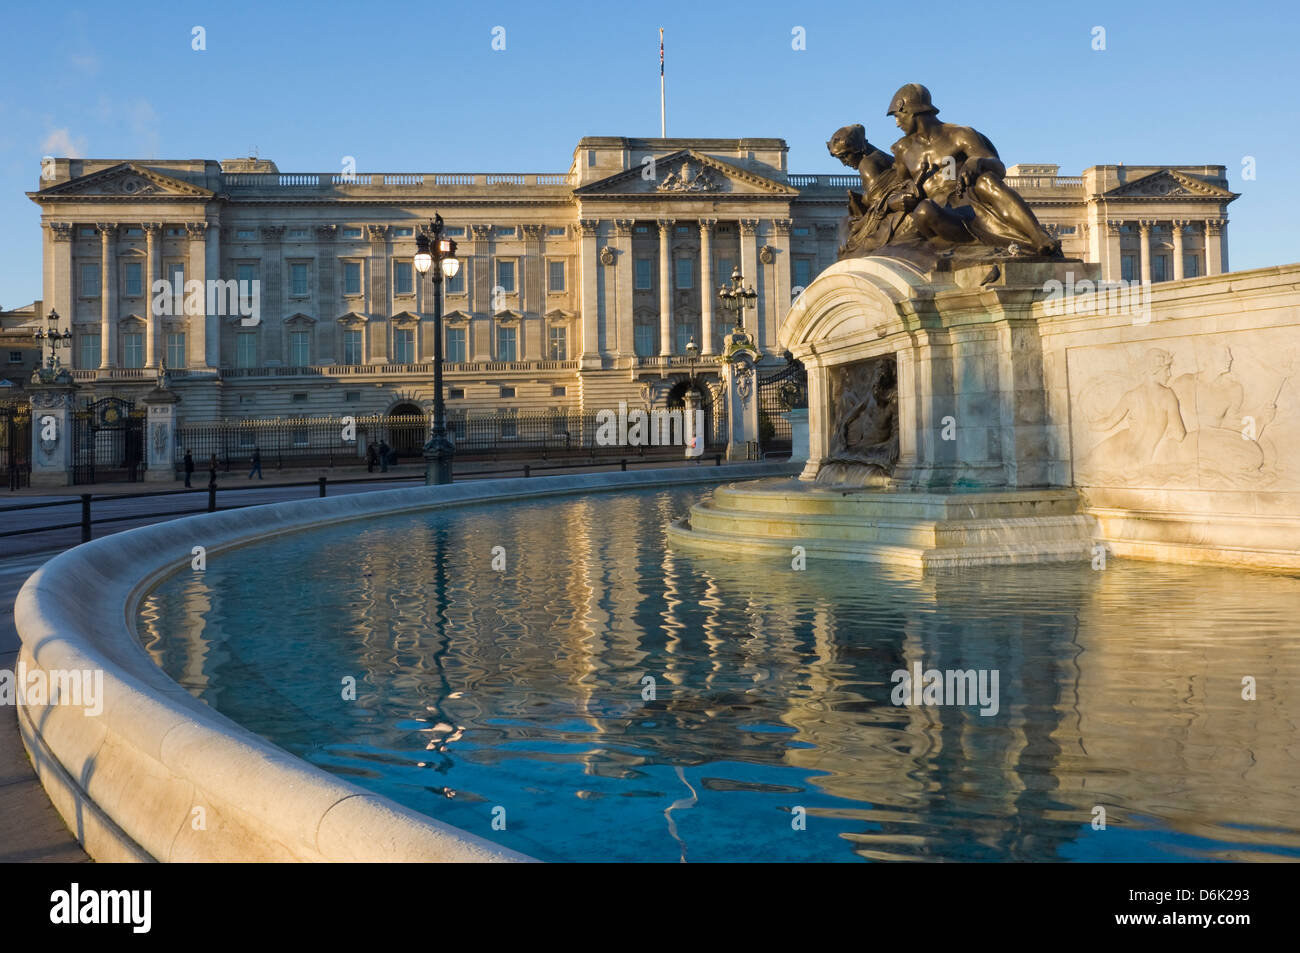 Le lever du soleil, le palais de Buckingham et la fontaine, Londres, Angleterre, Royaume-Uni, Europe Banque D'Images